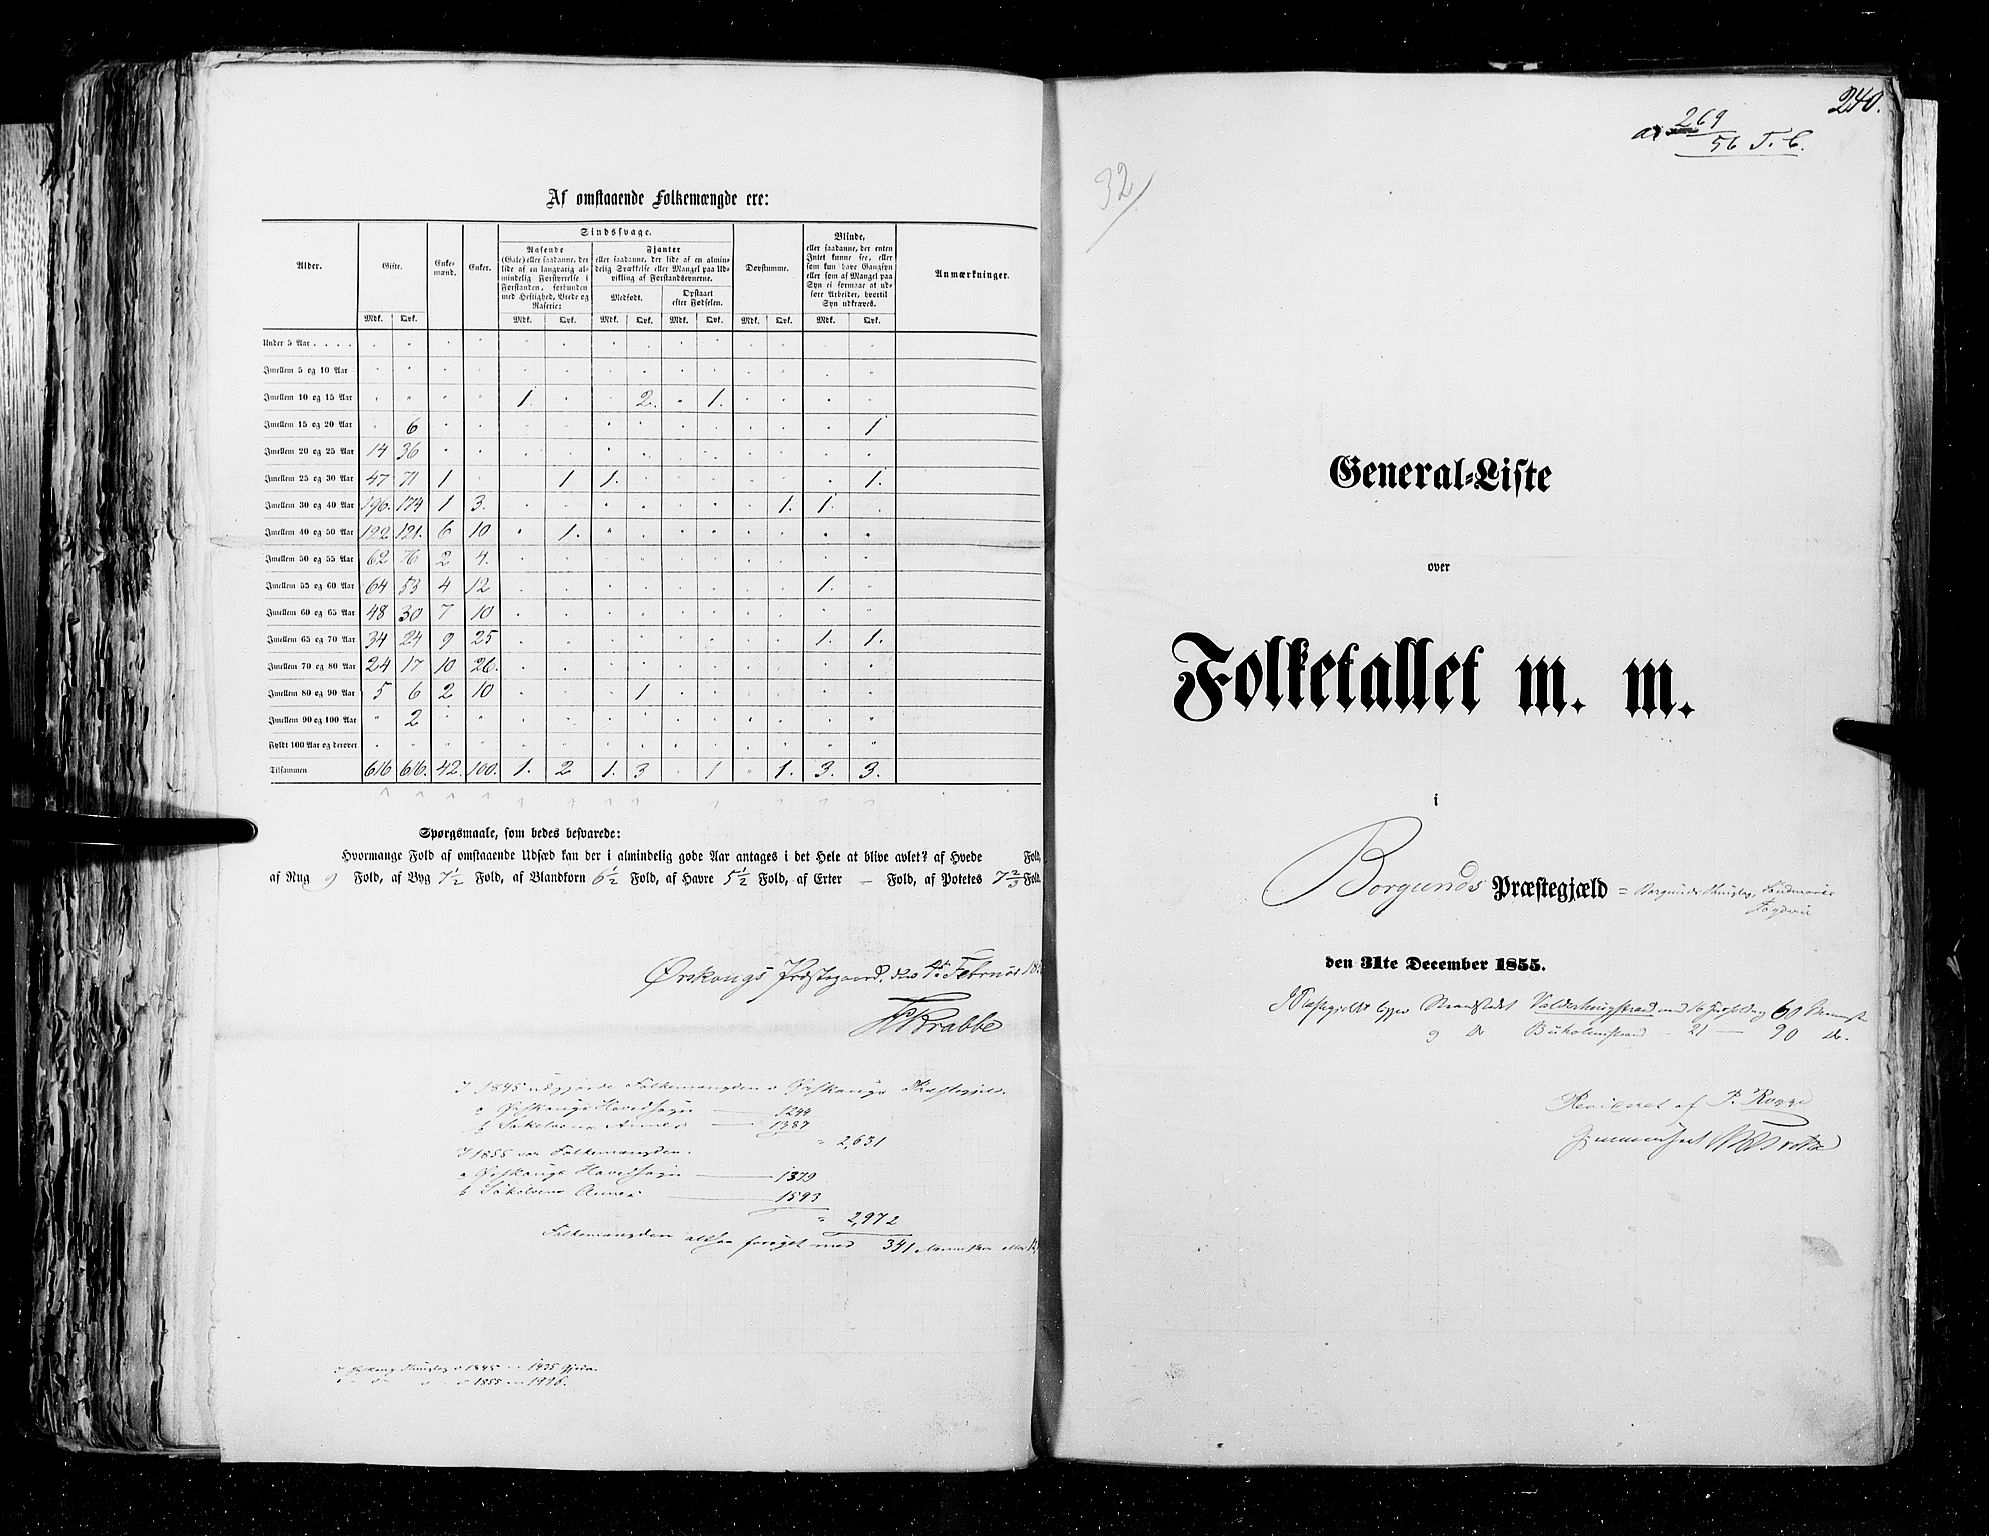 RA, Census 1855, vol. 5: Nordre Bergenhus amt, Romsdal amt og Søndre Trondhjem amt, 1855, p. 240